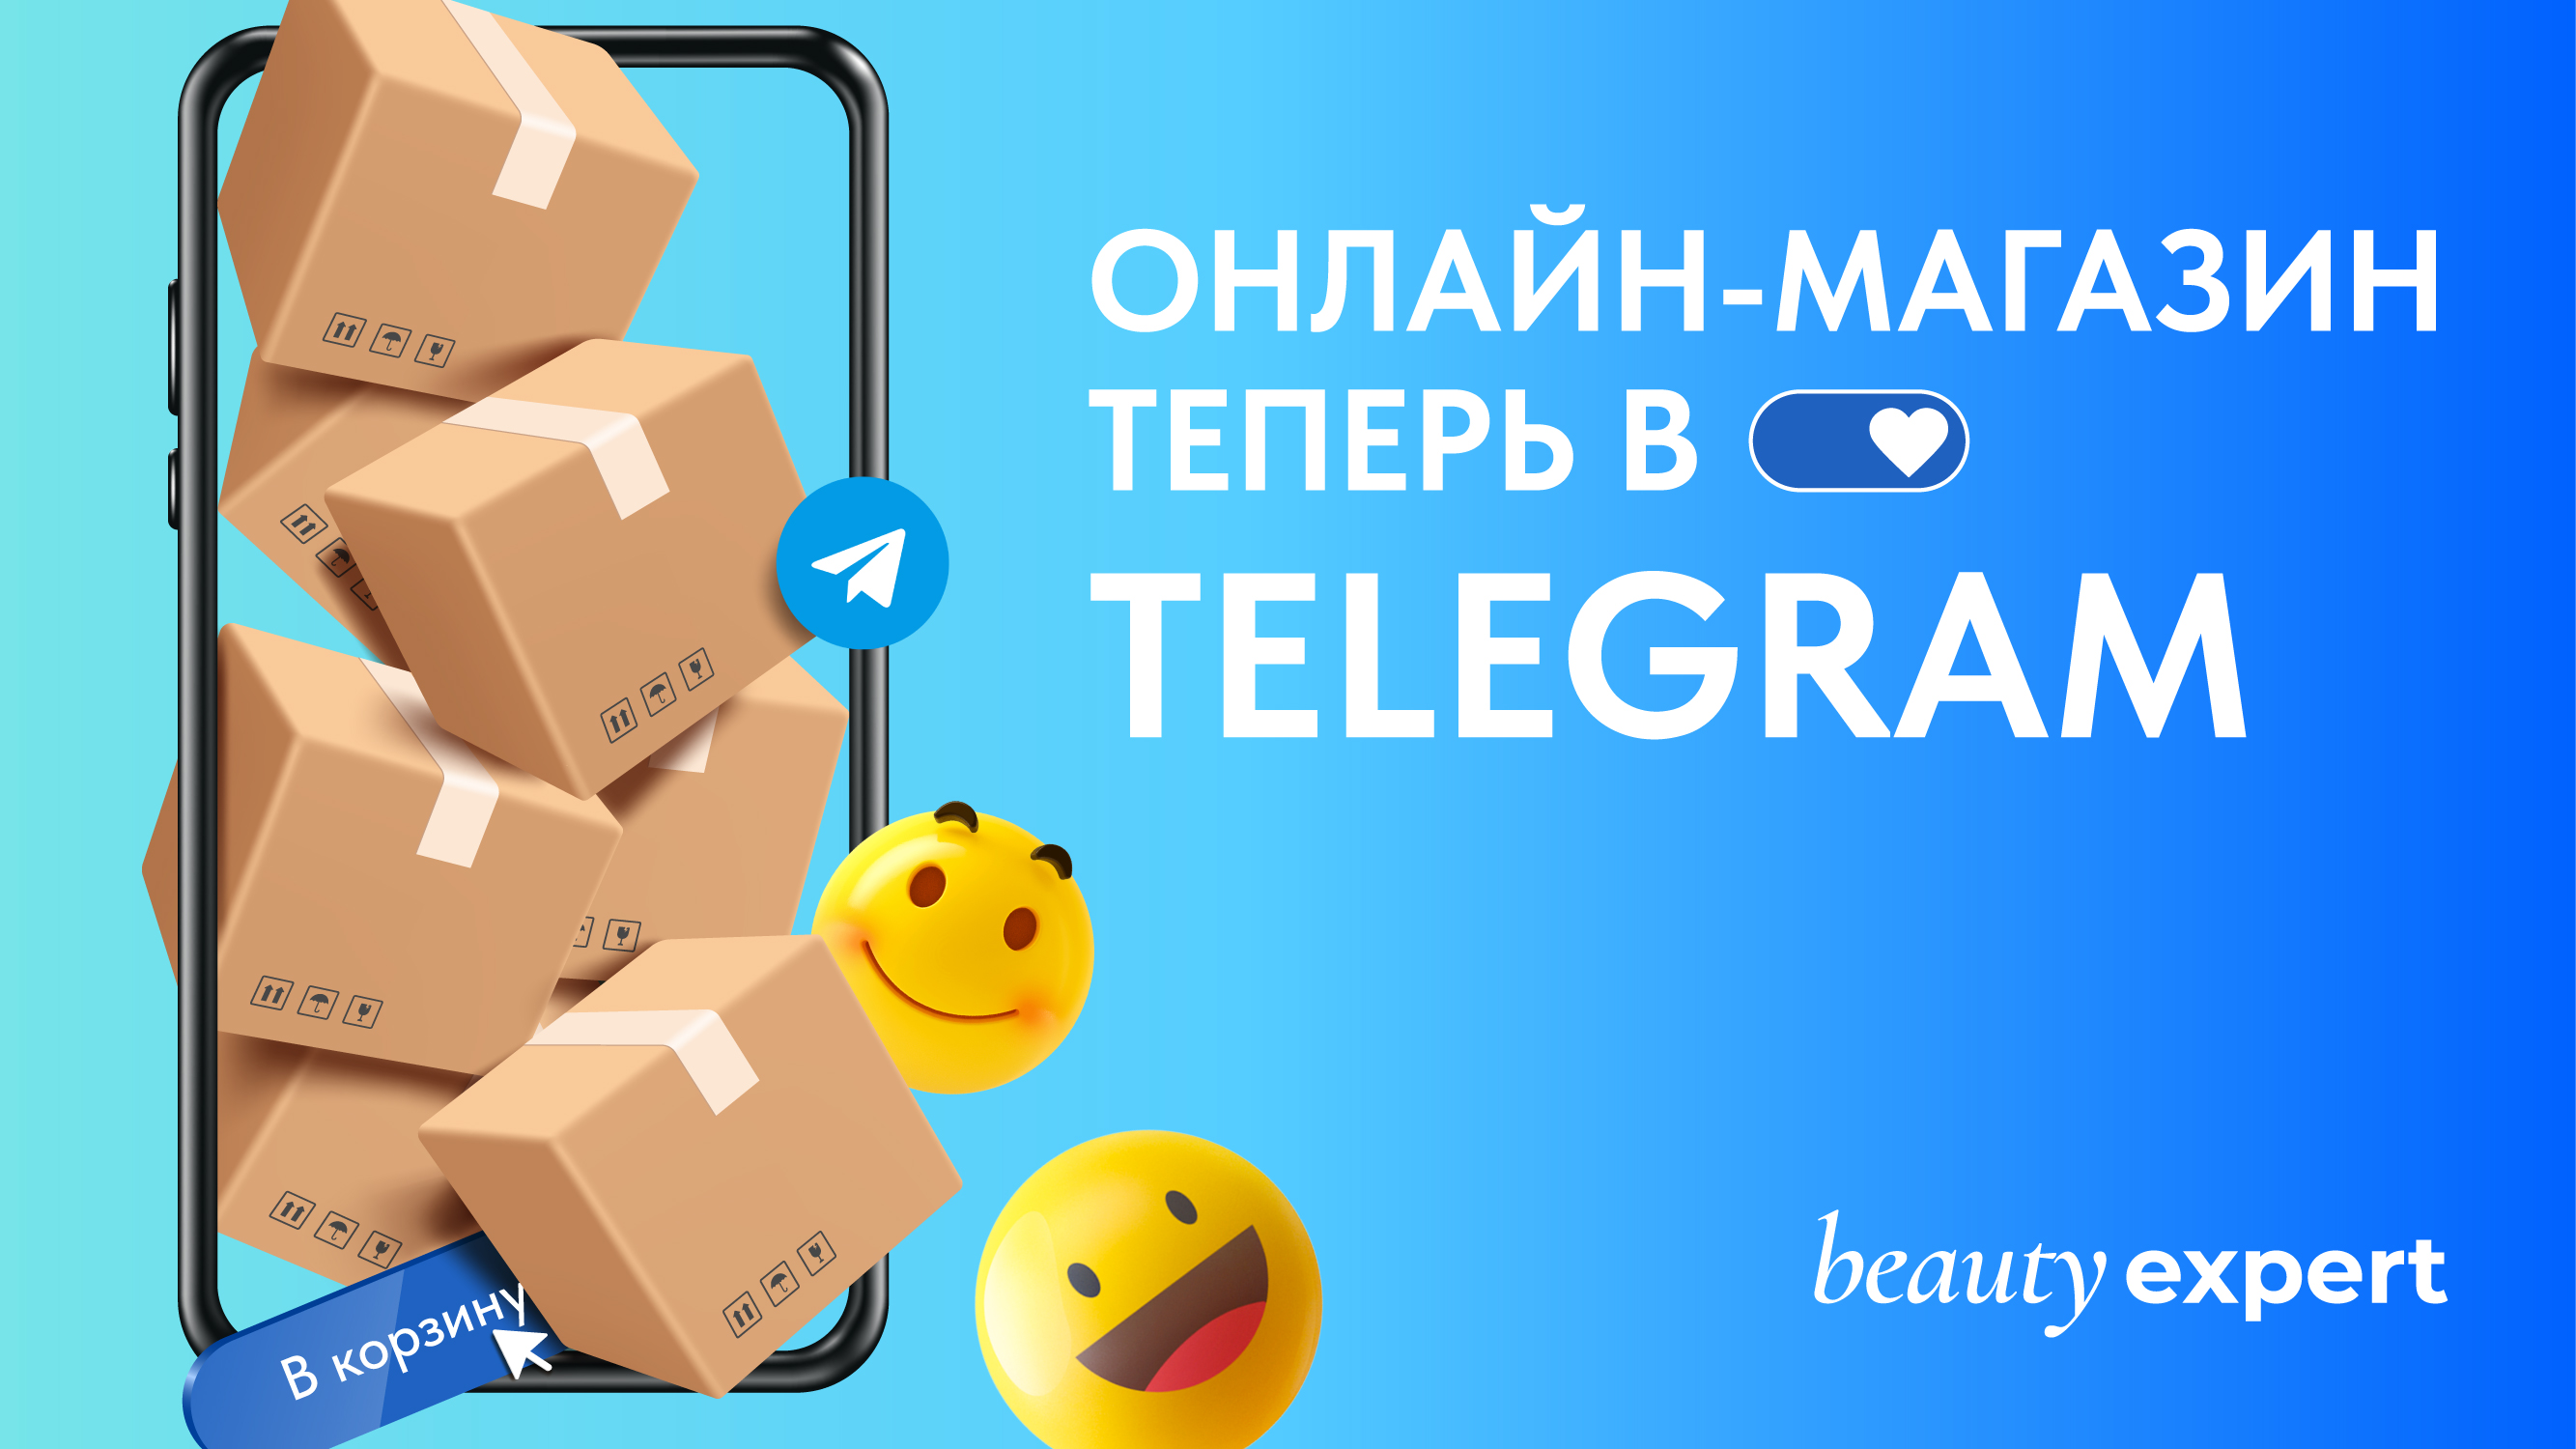 Онлайн - магазин теперь в Telegram